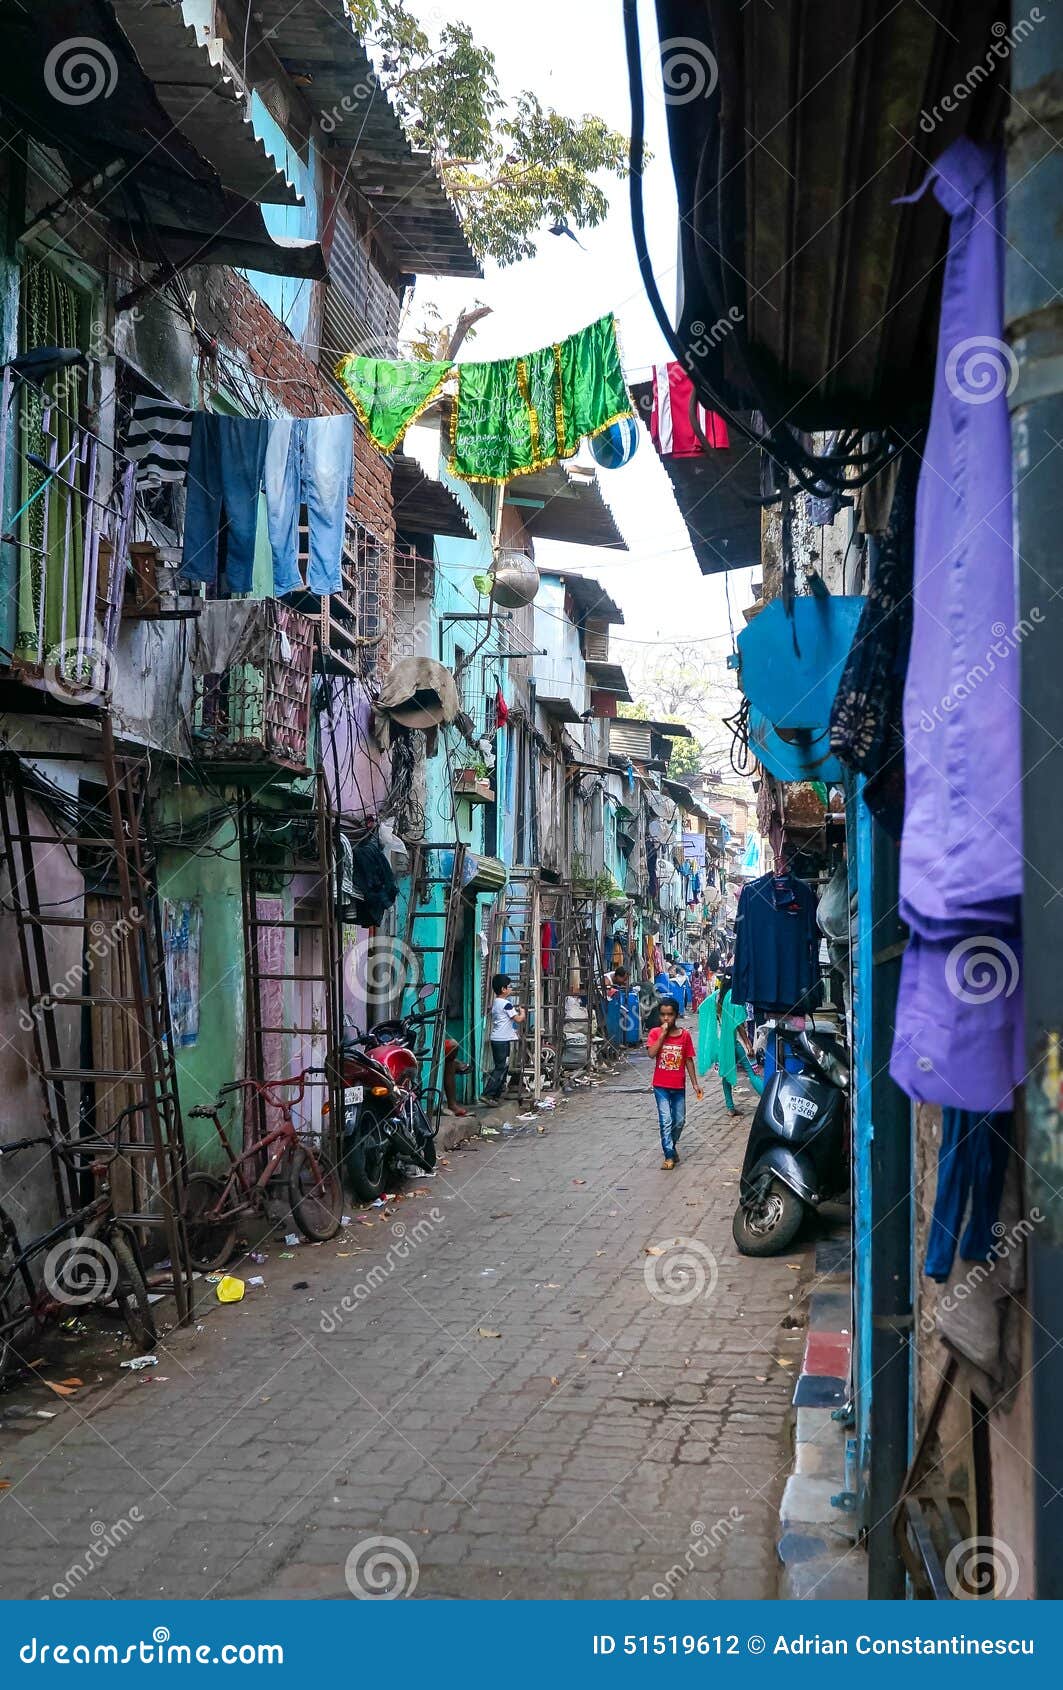 mumbai-slum-street-january-51519612.jpg